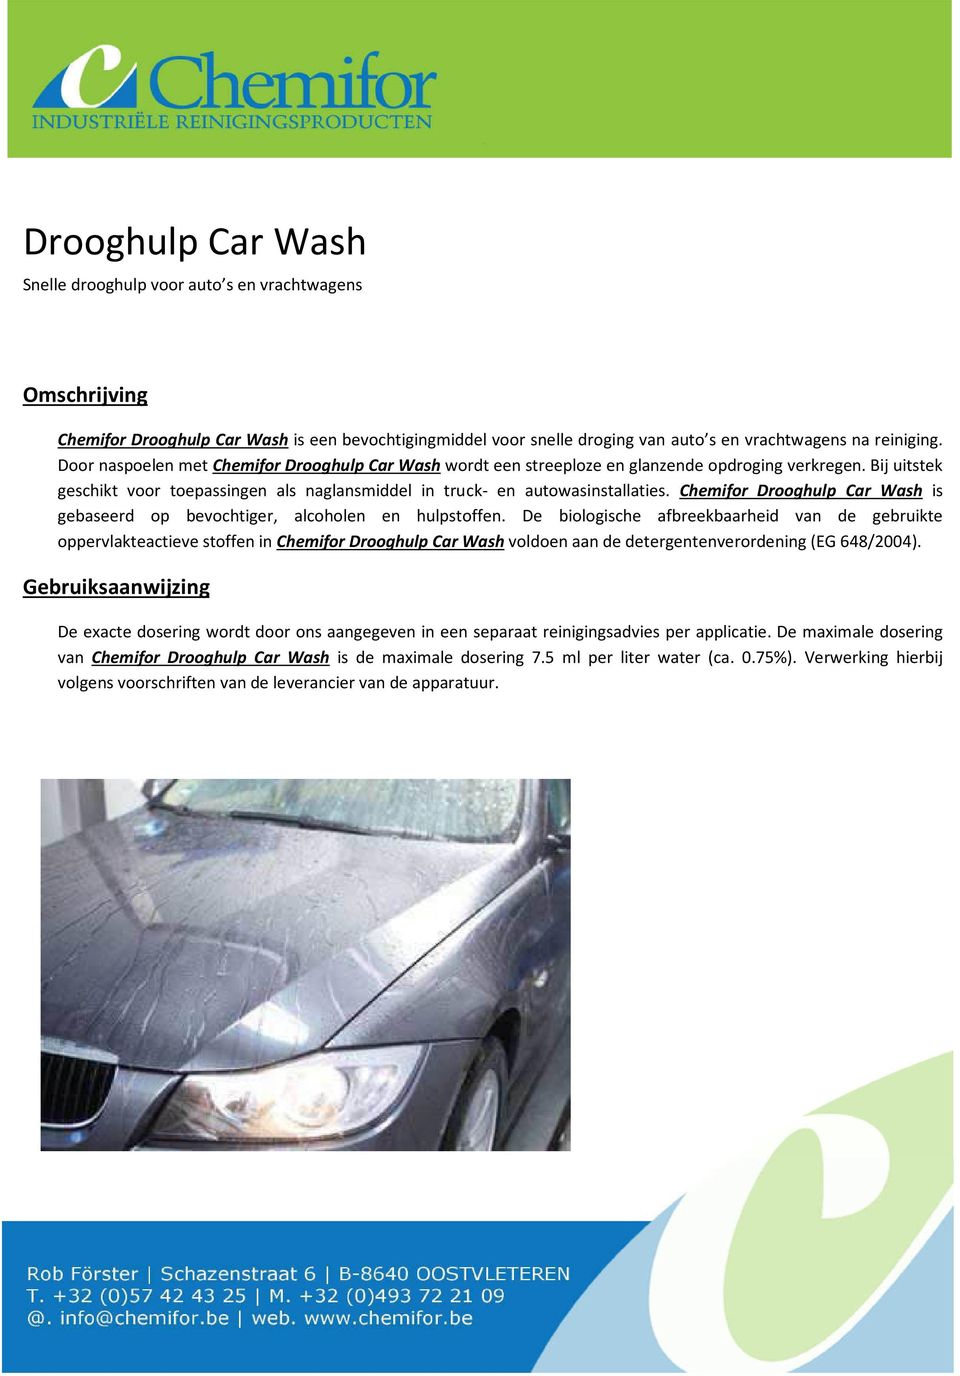 Chemifor Drooghulp Car Wash is gebaseerd op bevochtiger, alcoholen en hulpstoffen.